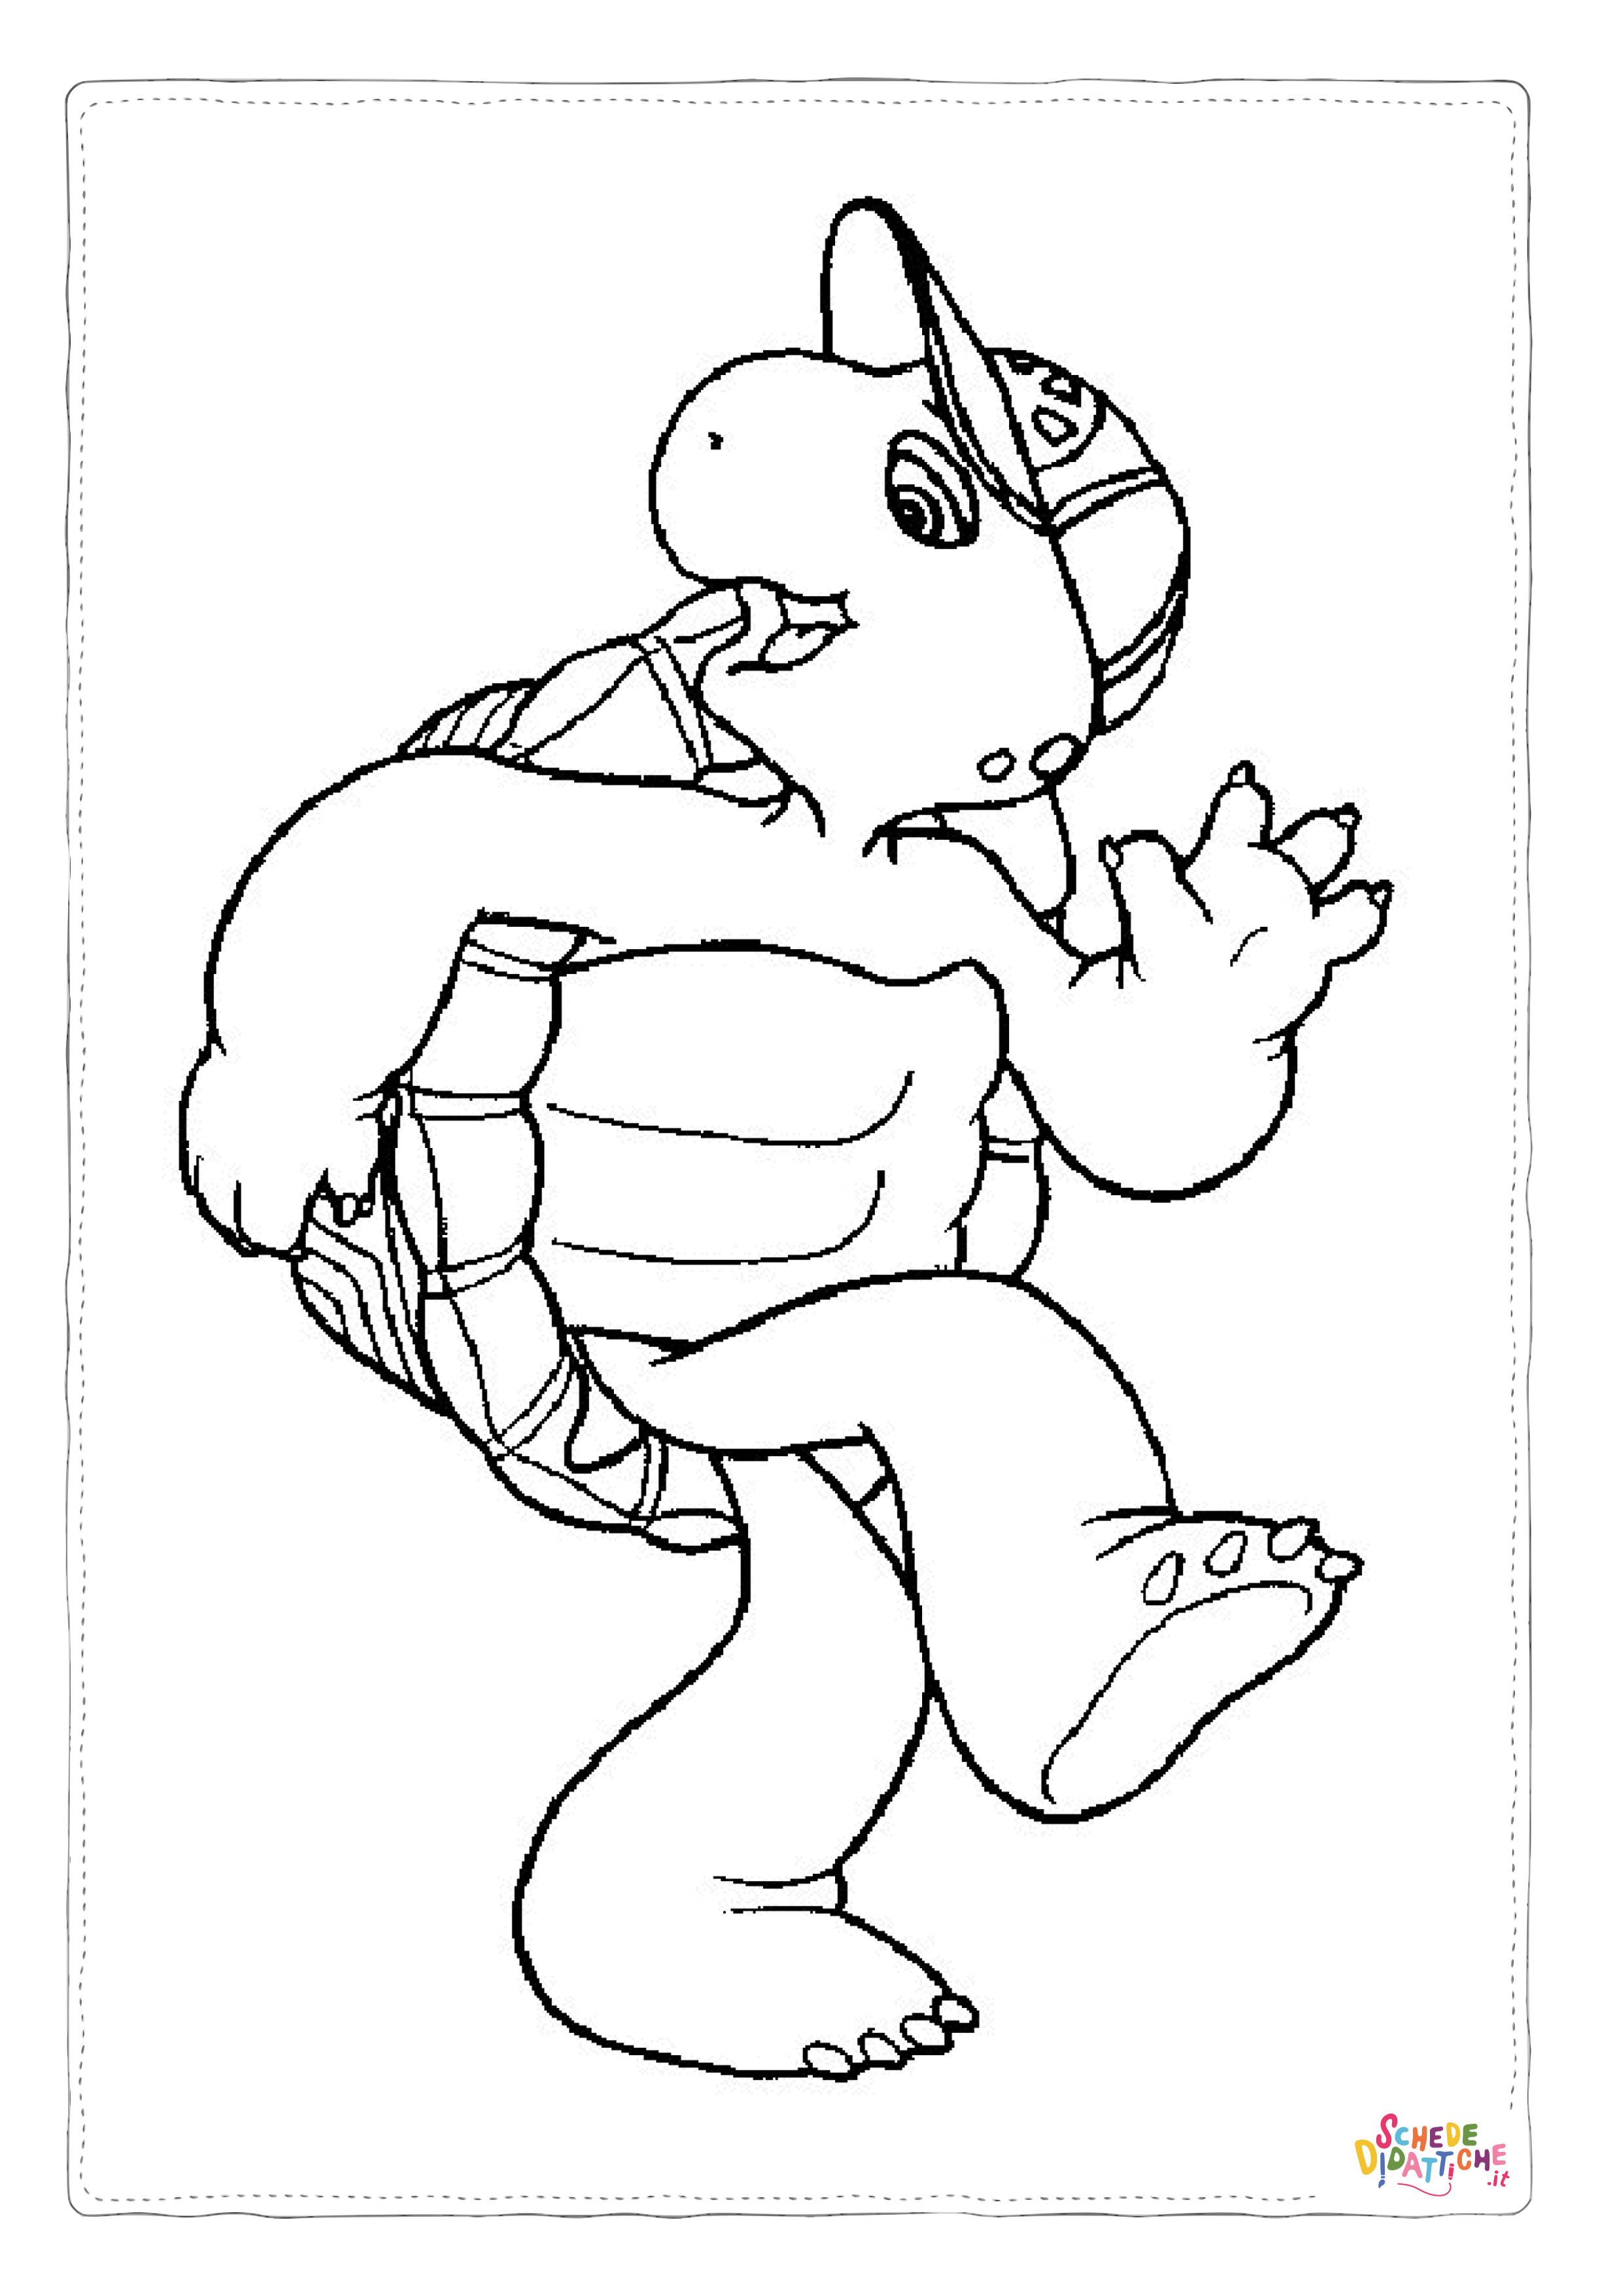 Disegno di tartaruga di terra da stampare e colorare 1